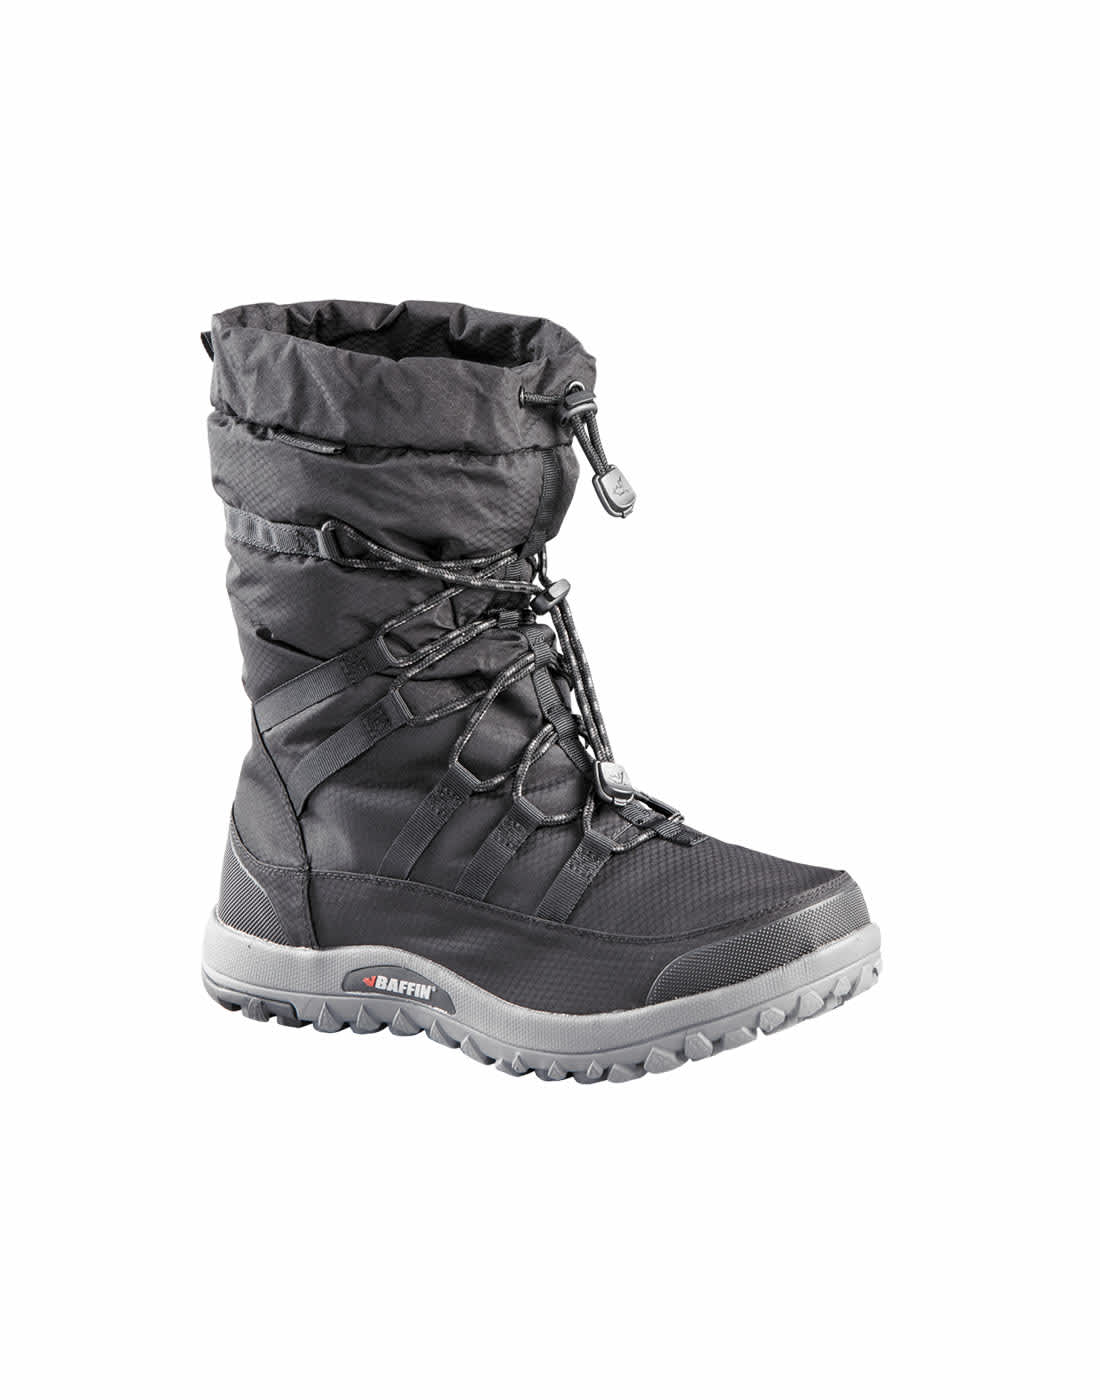 Baffin® Men’s Escalate X Winter Boot